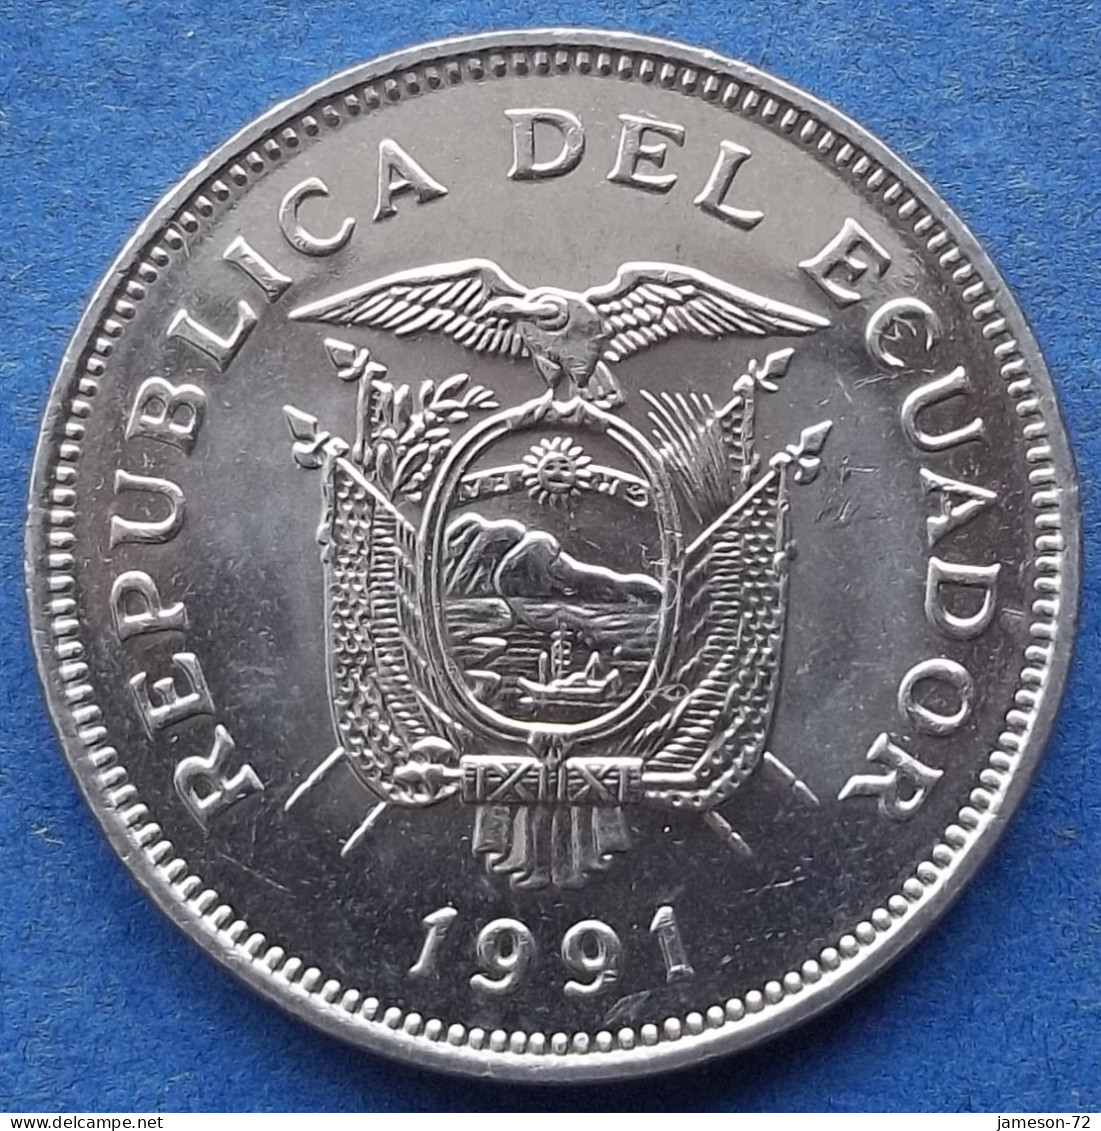 ECUADOR - 20 Sucres 1991 "Middle Of The World" KM# 94.2 Decimal Coinage (1872-1999) - Edelweiss Coins - Ecuador